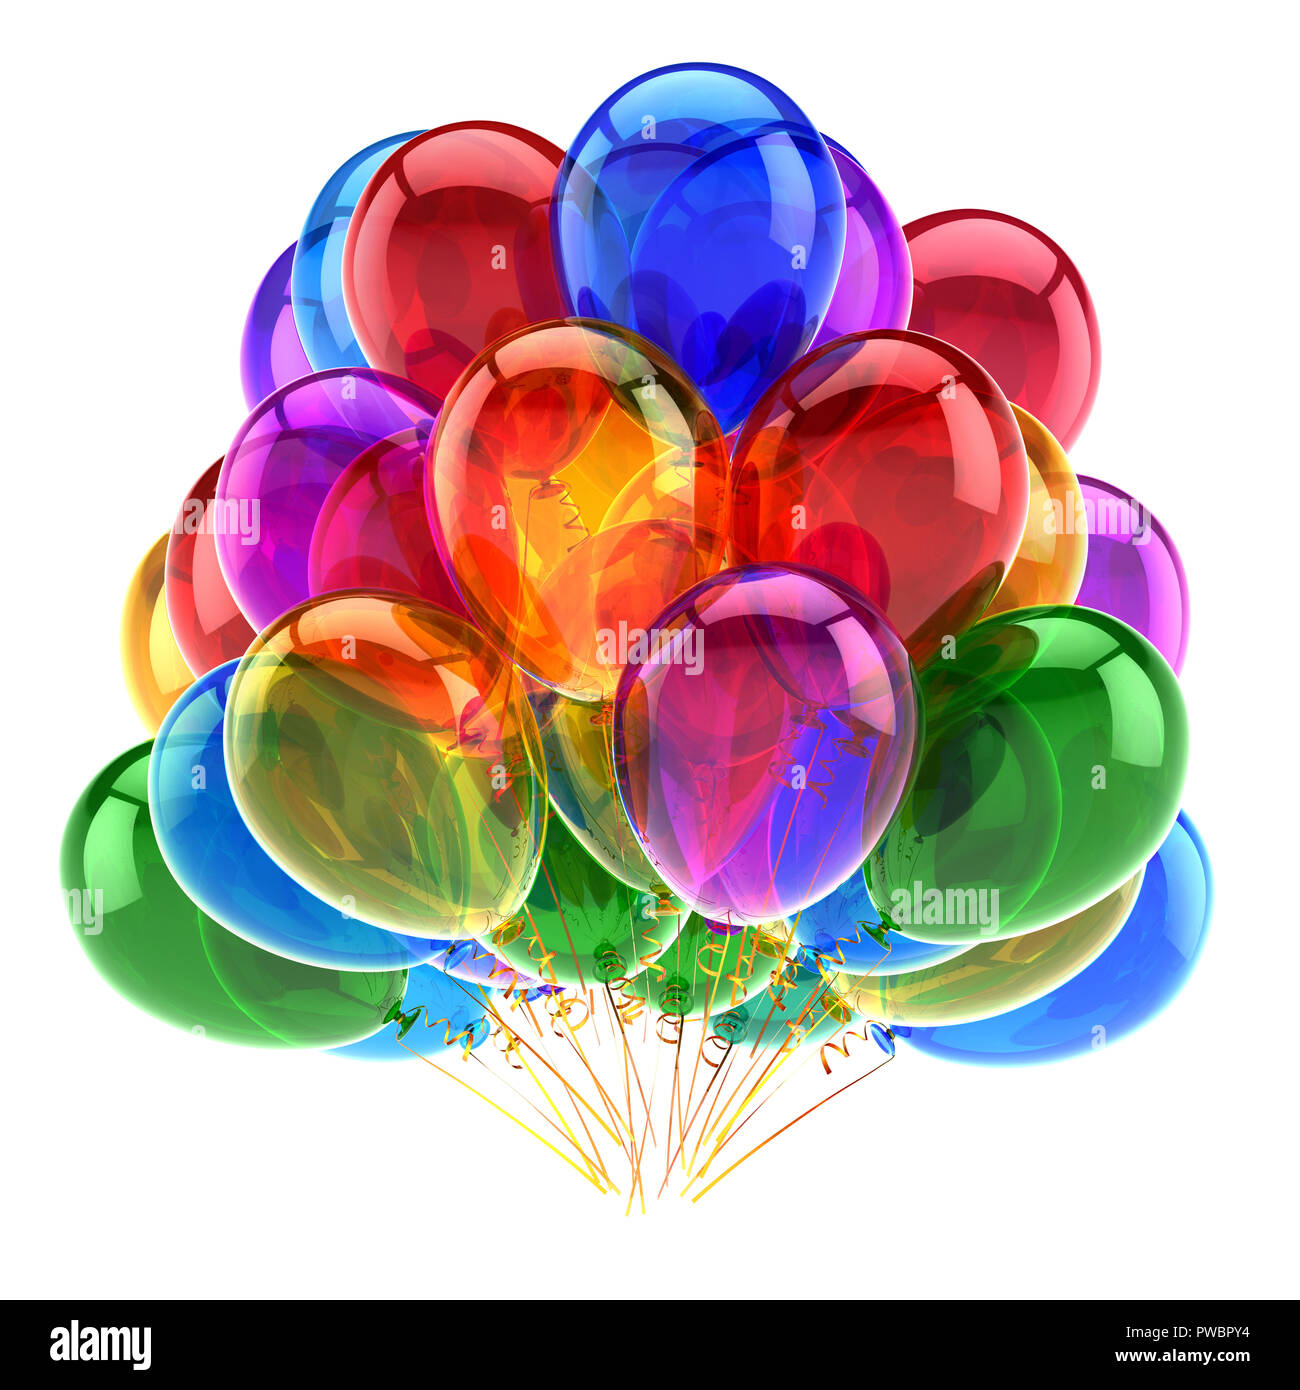 Ballons De Fête Joyeux Anniversaire Décoration De Carnaval Brillant  Multicolore Coloré. L'anniversaire De Vacances Célèbre L'élément De  Conception De La Carte De Voeux De Saint-Sylvestre. Illustration 3D Isolée  Banque D'Images et Photos